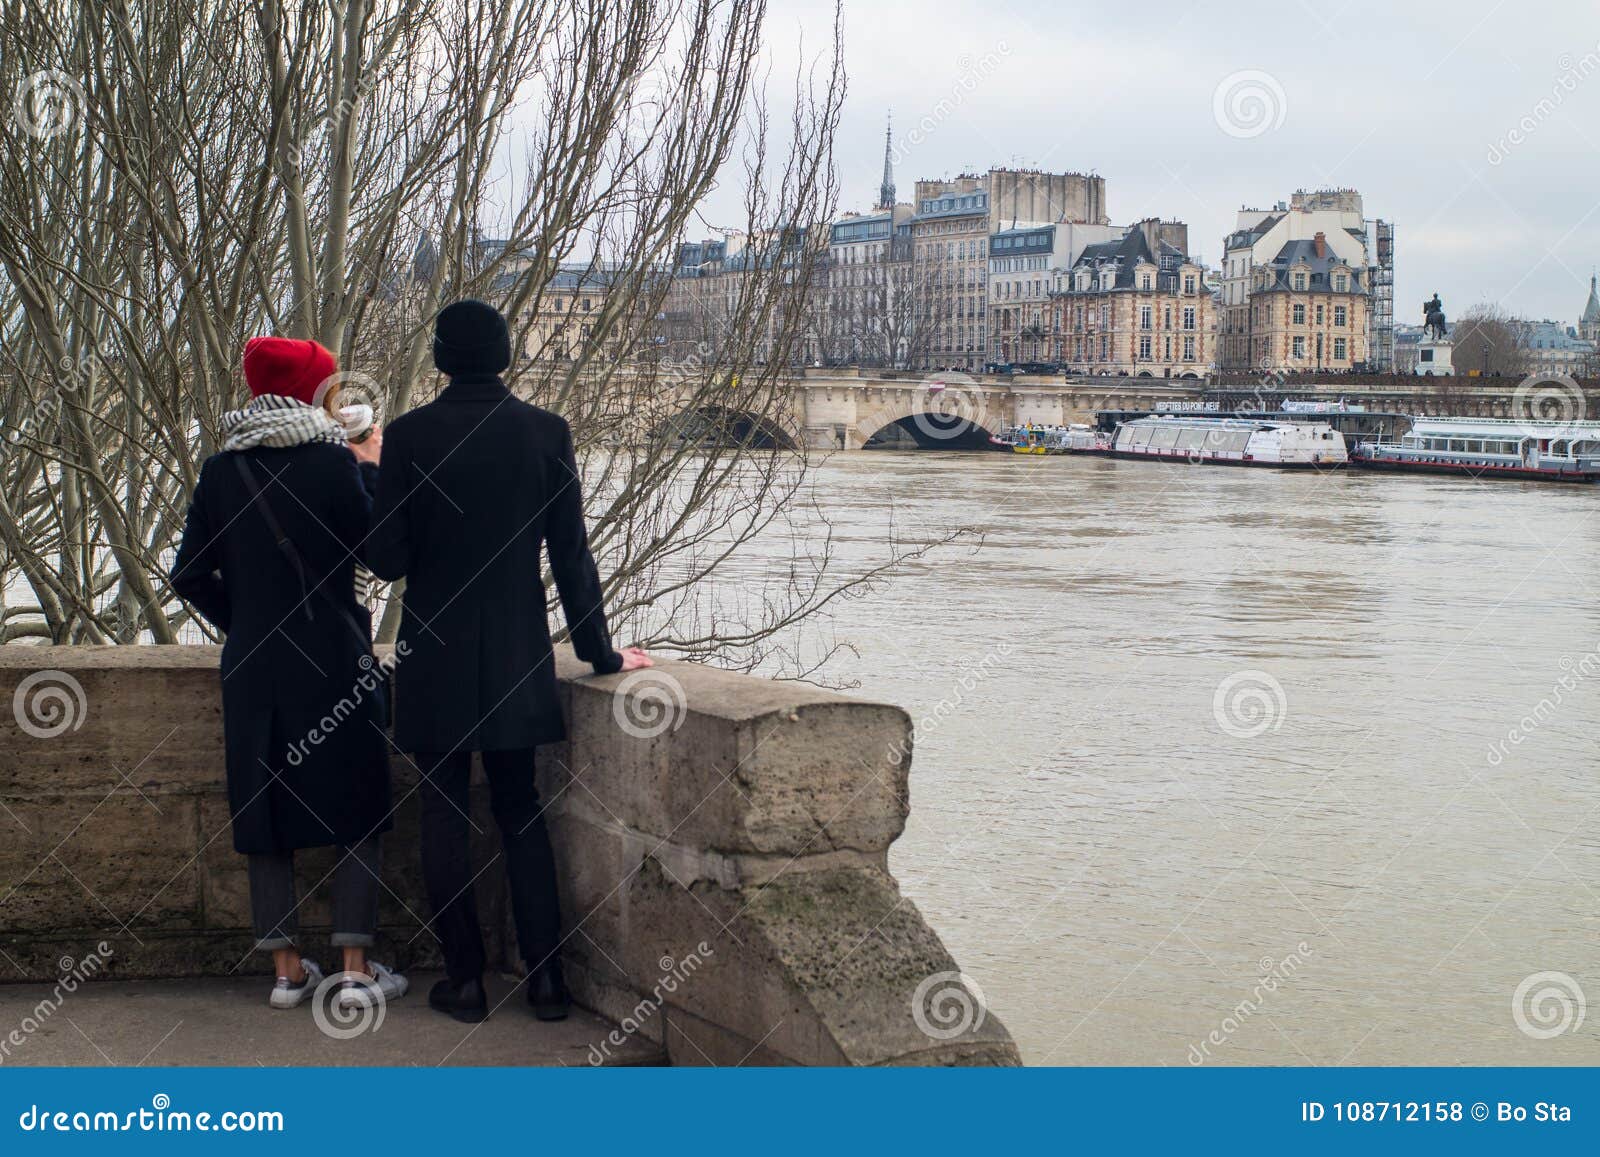 is paris still dating river